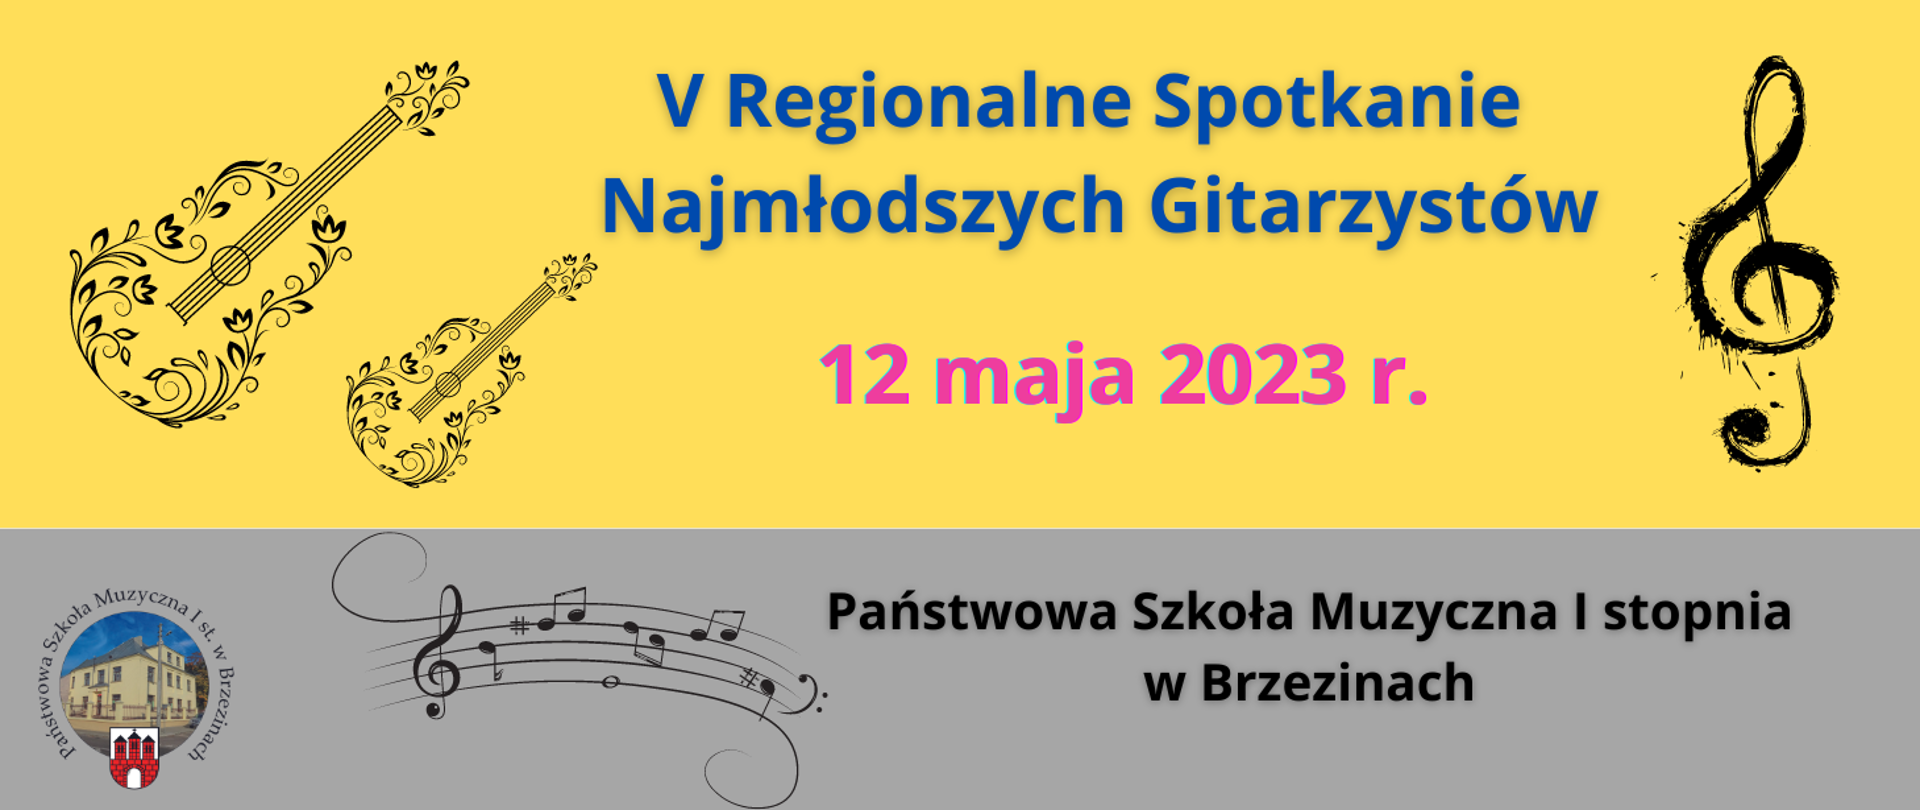 Grafika przedstawia napis na żółtym tle "V Regionalne Spotkanie Najmłodszych Gitarzystów" oraz datę "12 maja 2023 r." Poniżej w lewym dolnym rogu logo szkoły, nuty oraz napis "Państwowa Szkoła Muzyczna I stopnia w Brzezinach".